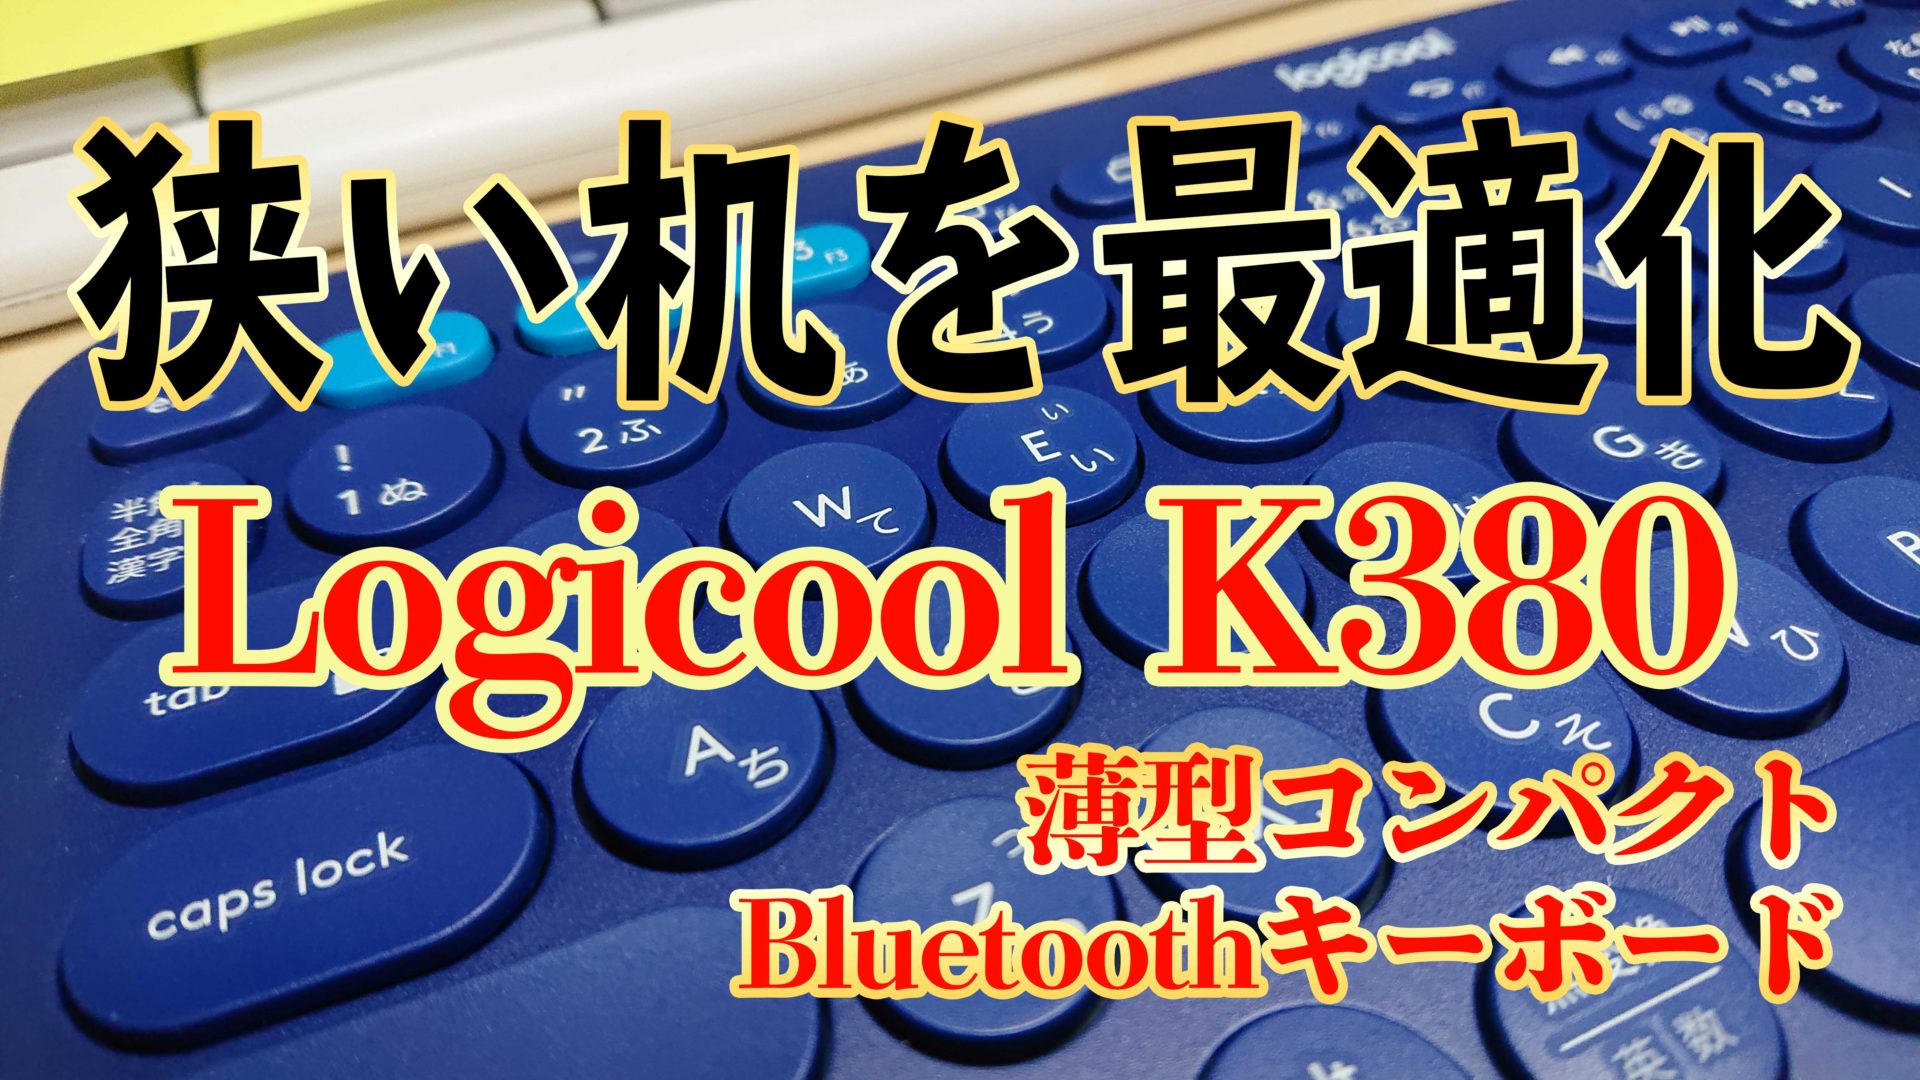 超コンパクト Ps4のおすすめbluetoothキーボード Logicool K380レビュー Loot Box